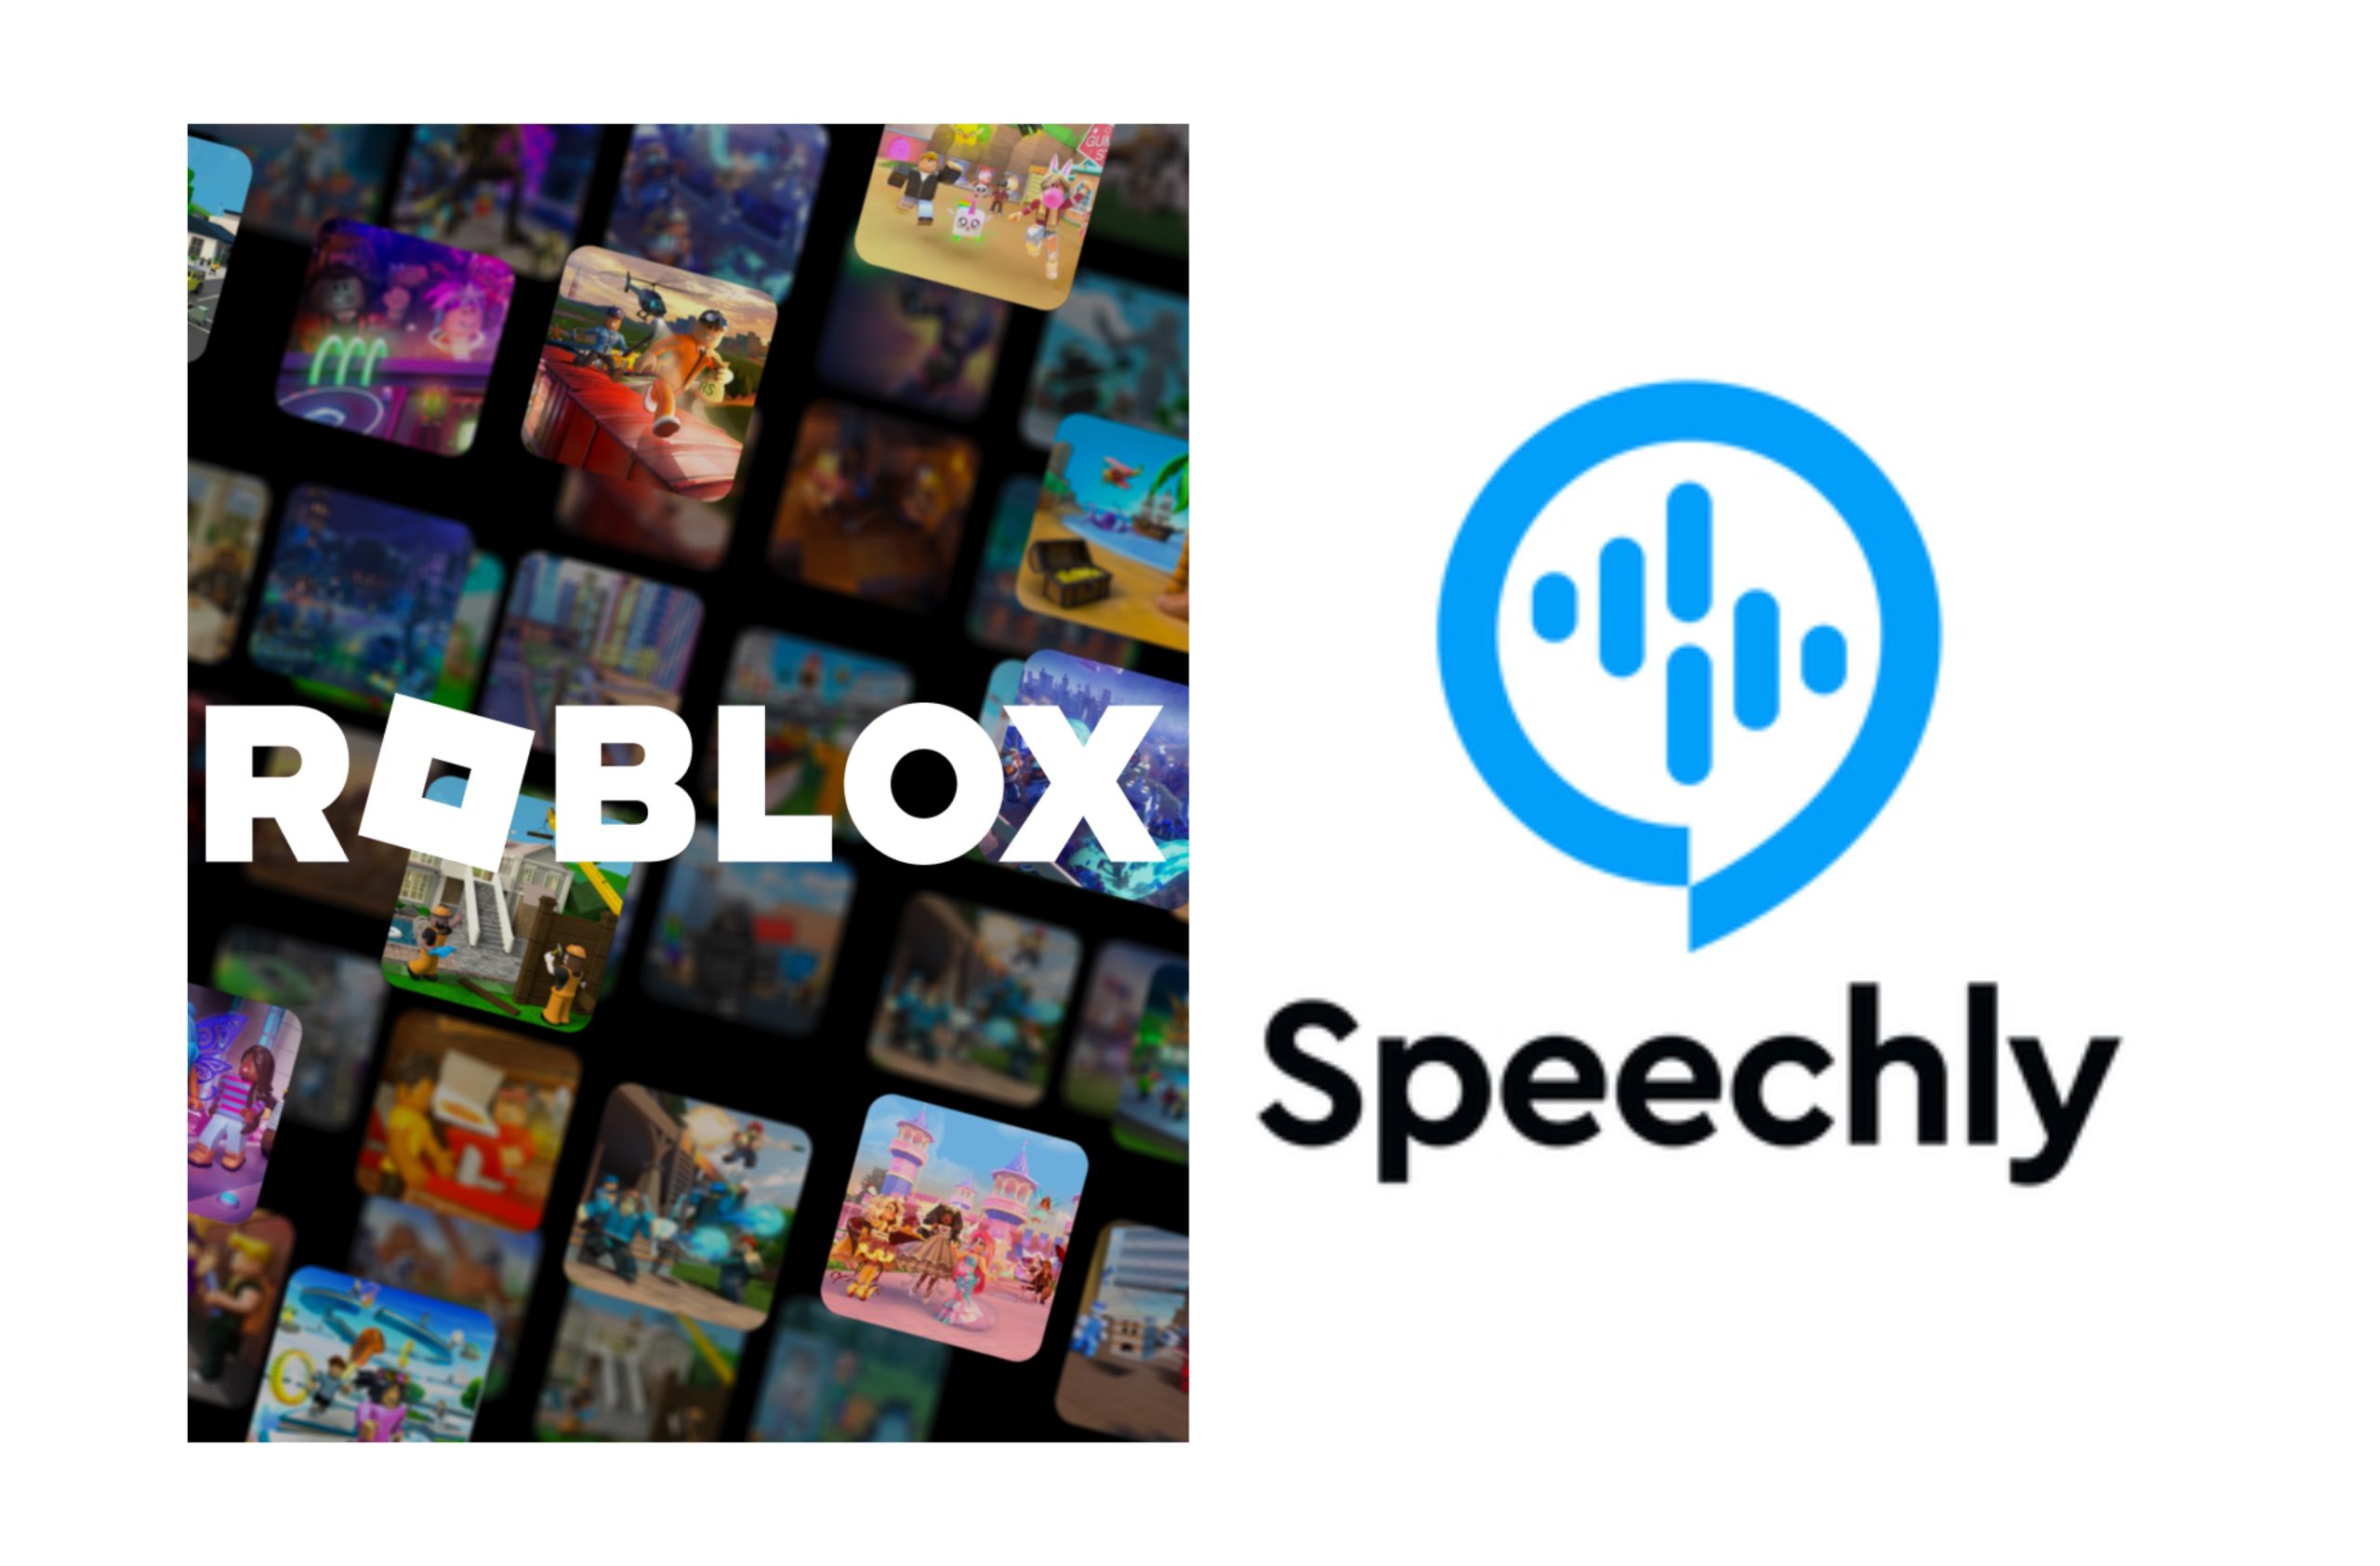 Roblox Acquires Speechly –